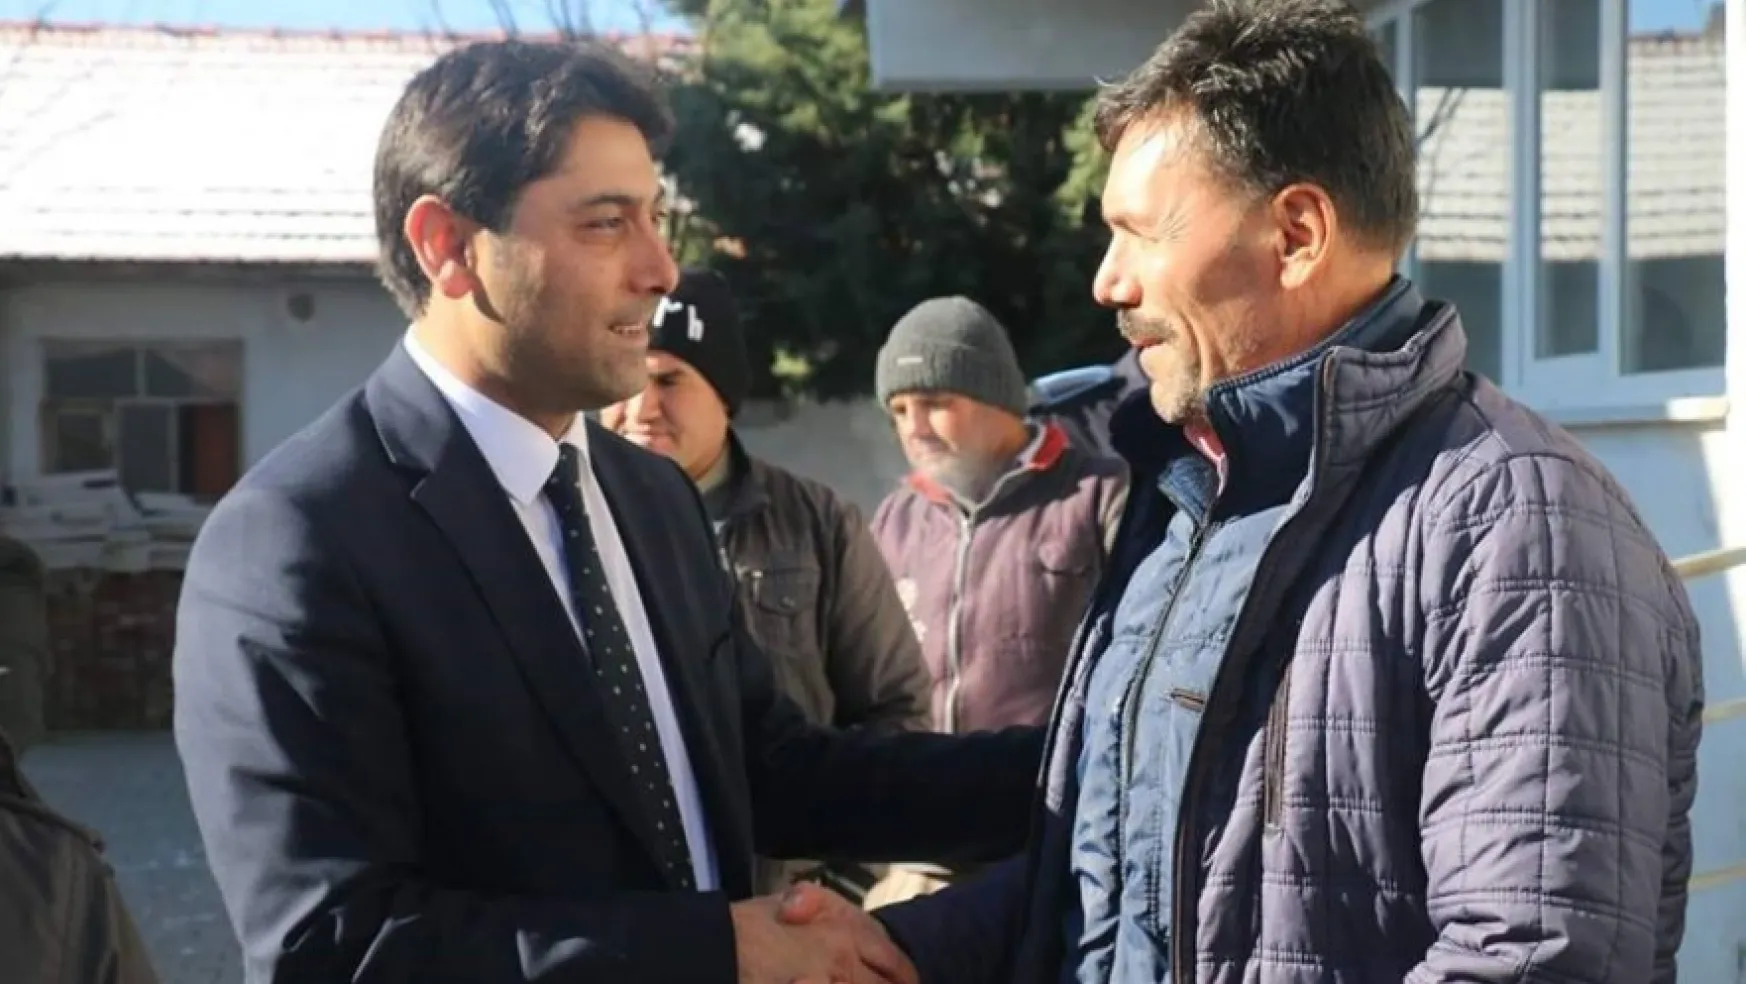 MHP'de siyaset yapma imkanım kalmadı diyerek istifa etti